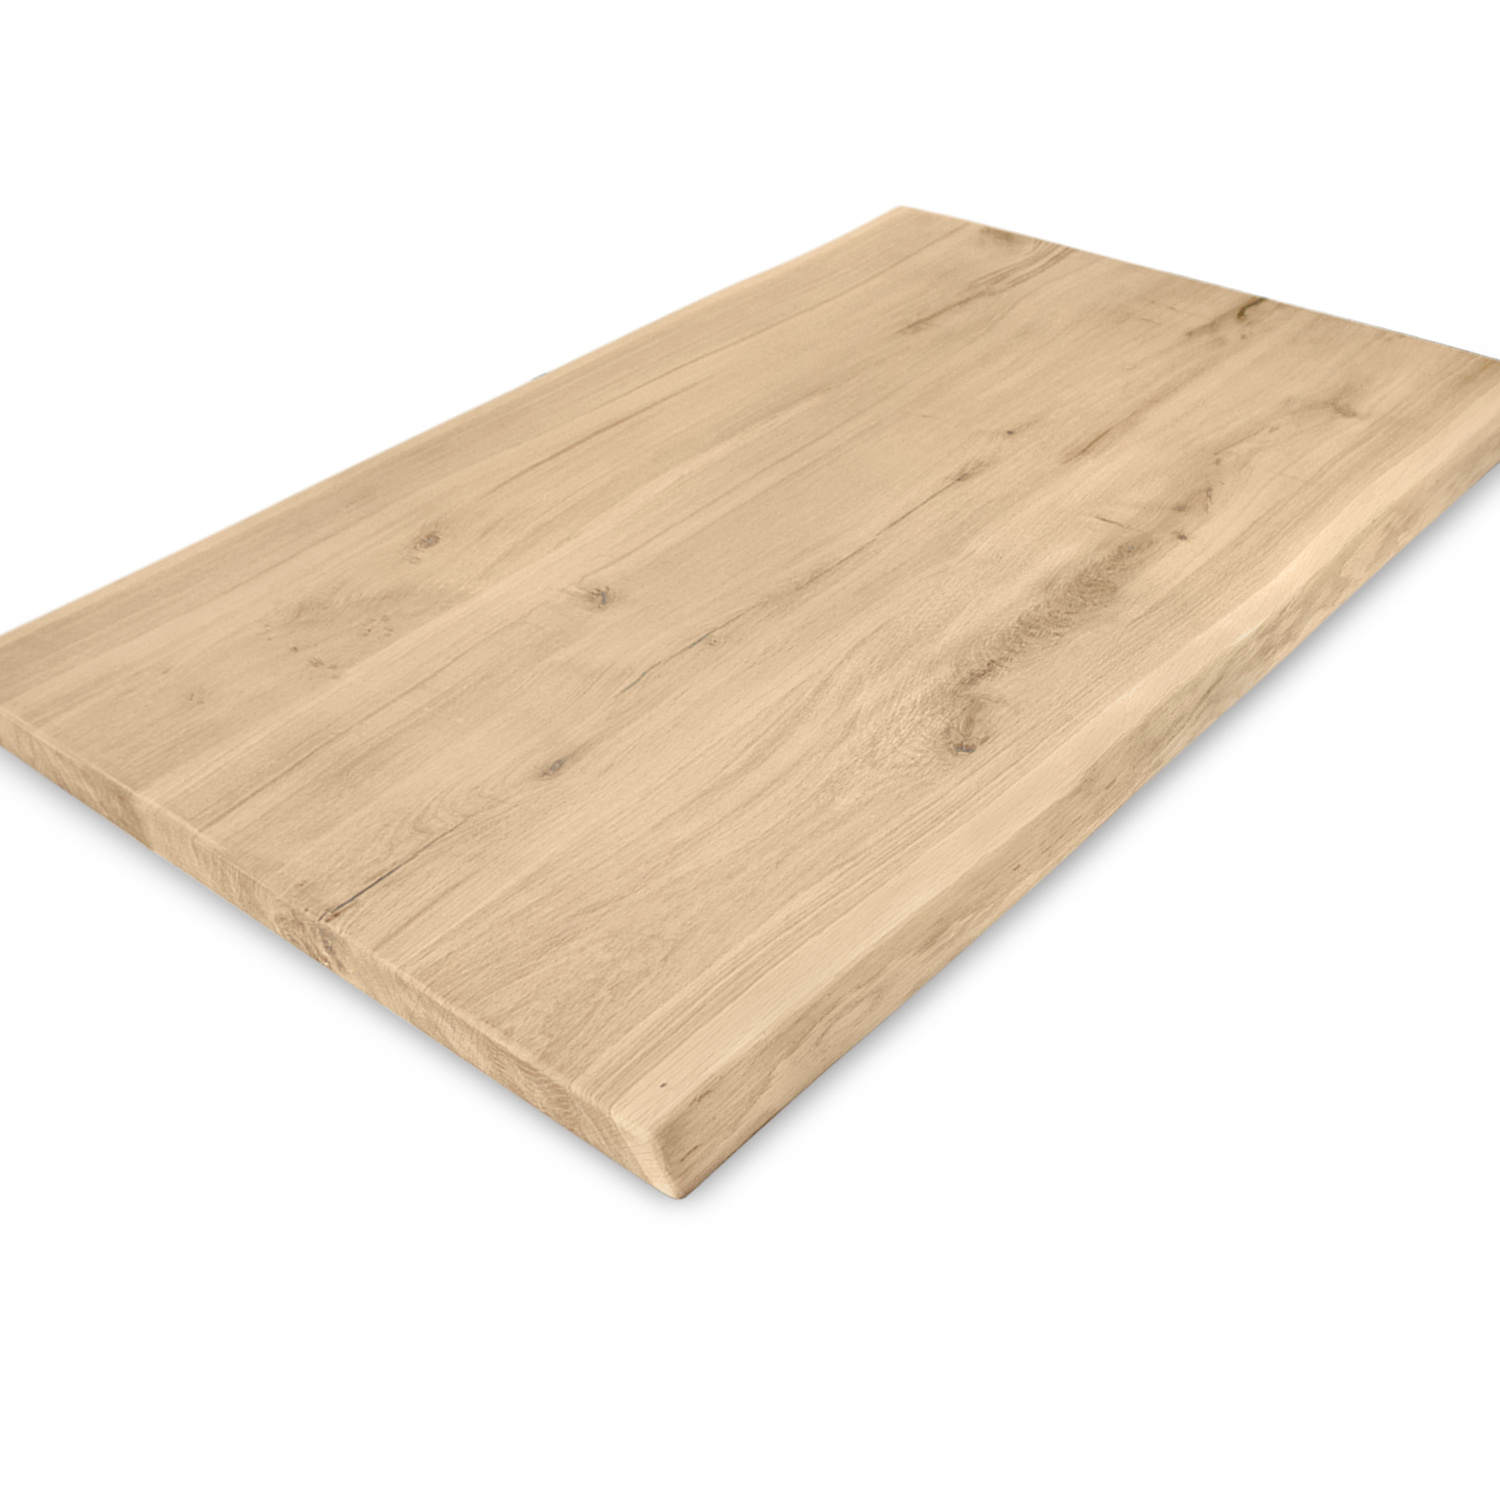  Tischplatte Wildeiche - Baumkante - 3 cm dick (1-Schicht) - XXL Lamellen (14-20 cm breit) - Asteiche (rustikal) mit natürlichen Baumkant - verleimt & künstlich getrocknet (HF 8-12%) - verschiedene Größen